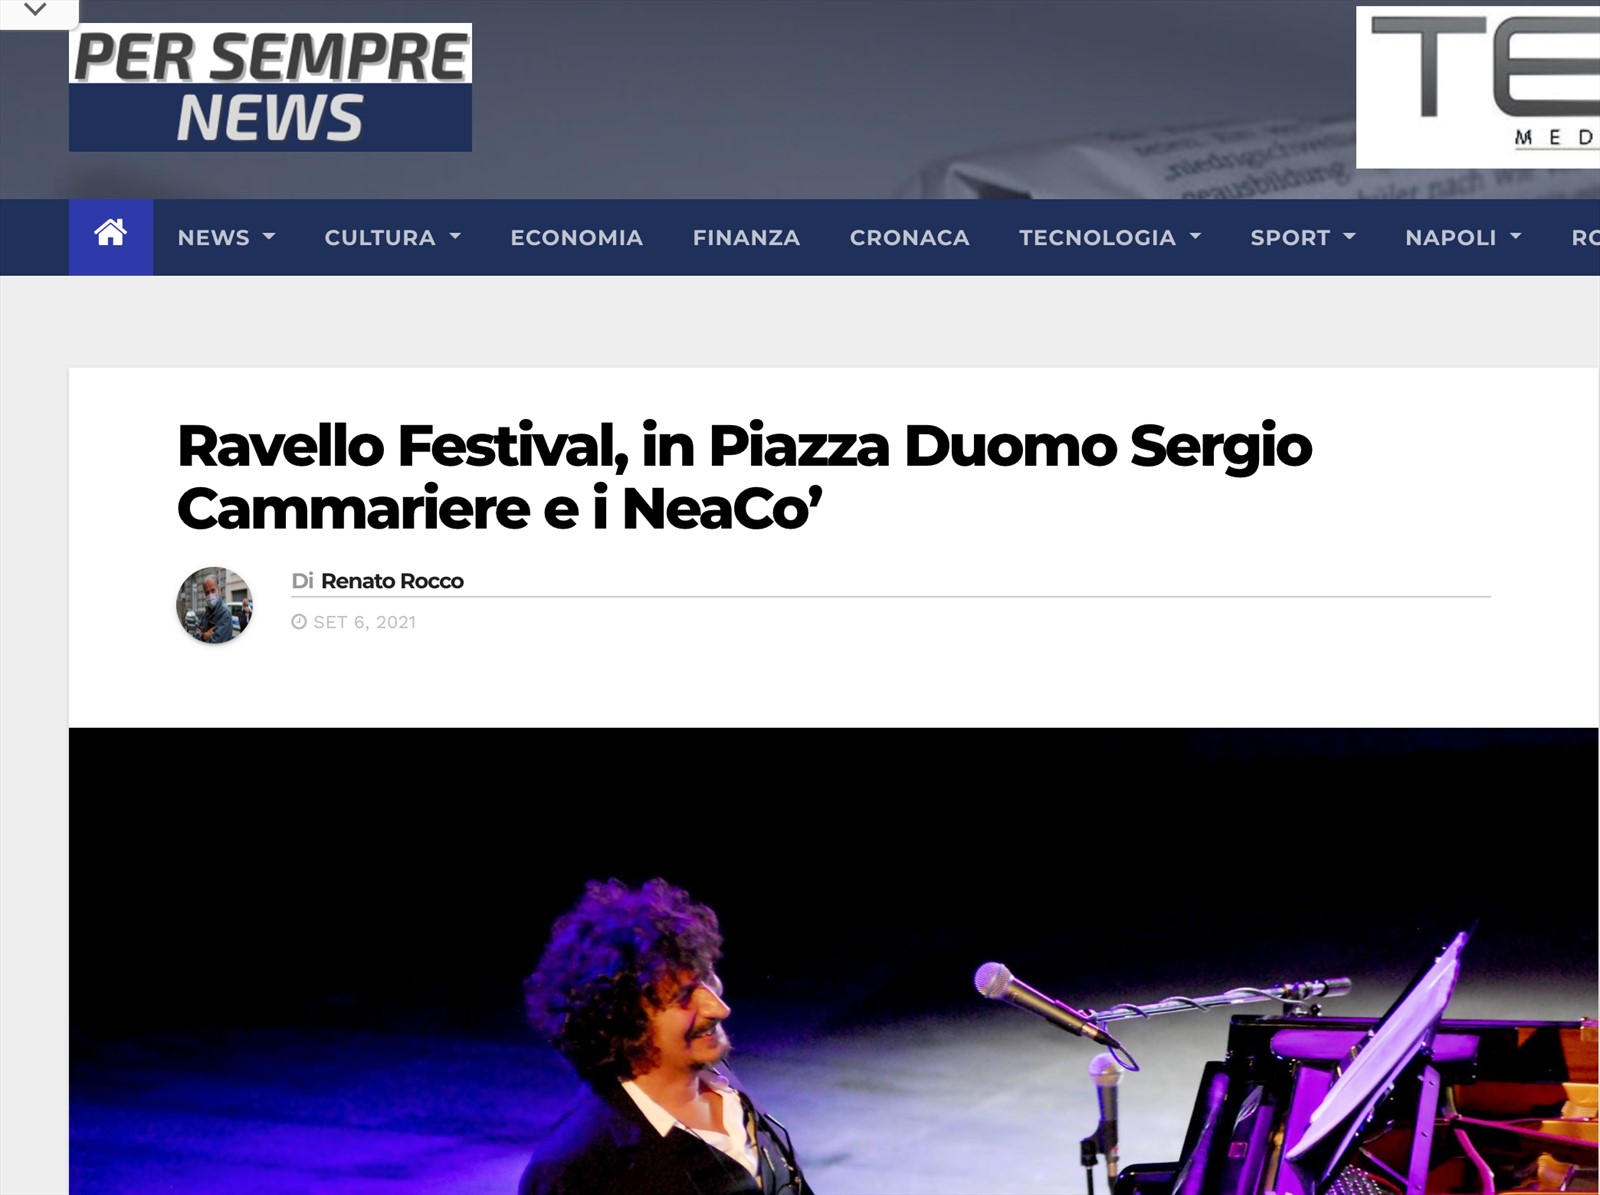 NEACO - STAMPA  - Ravello Festival, in Piazza Duomo Sergio Cammariere e i NeaCo’